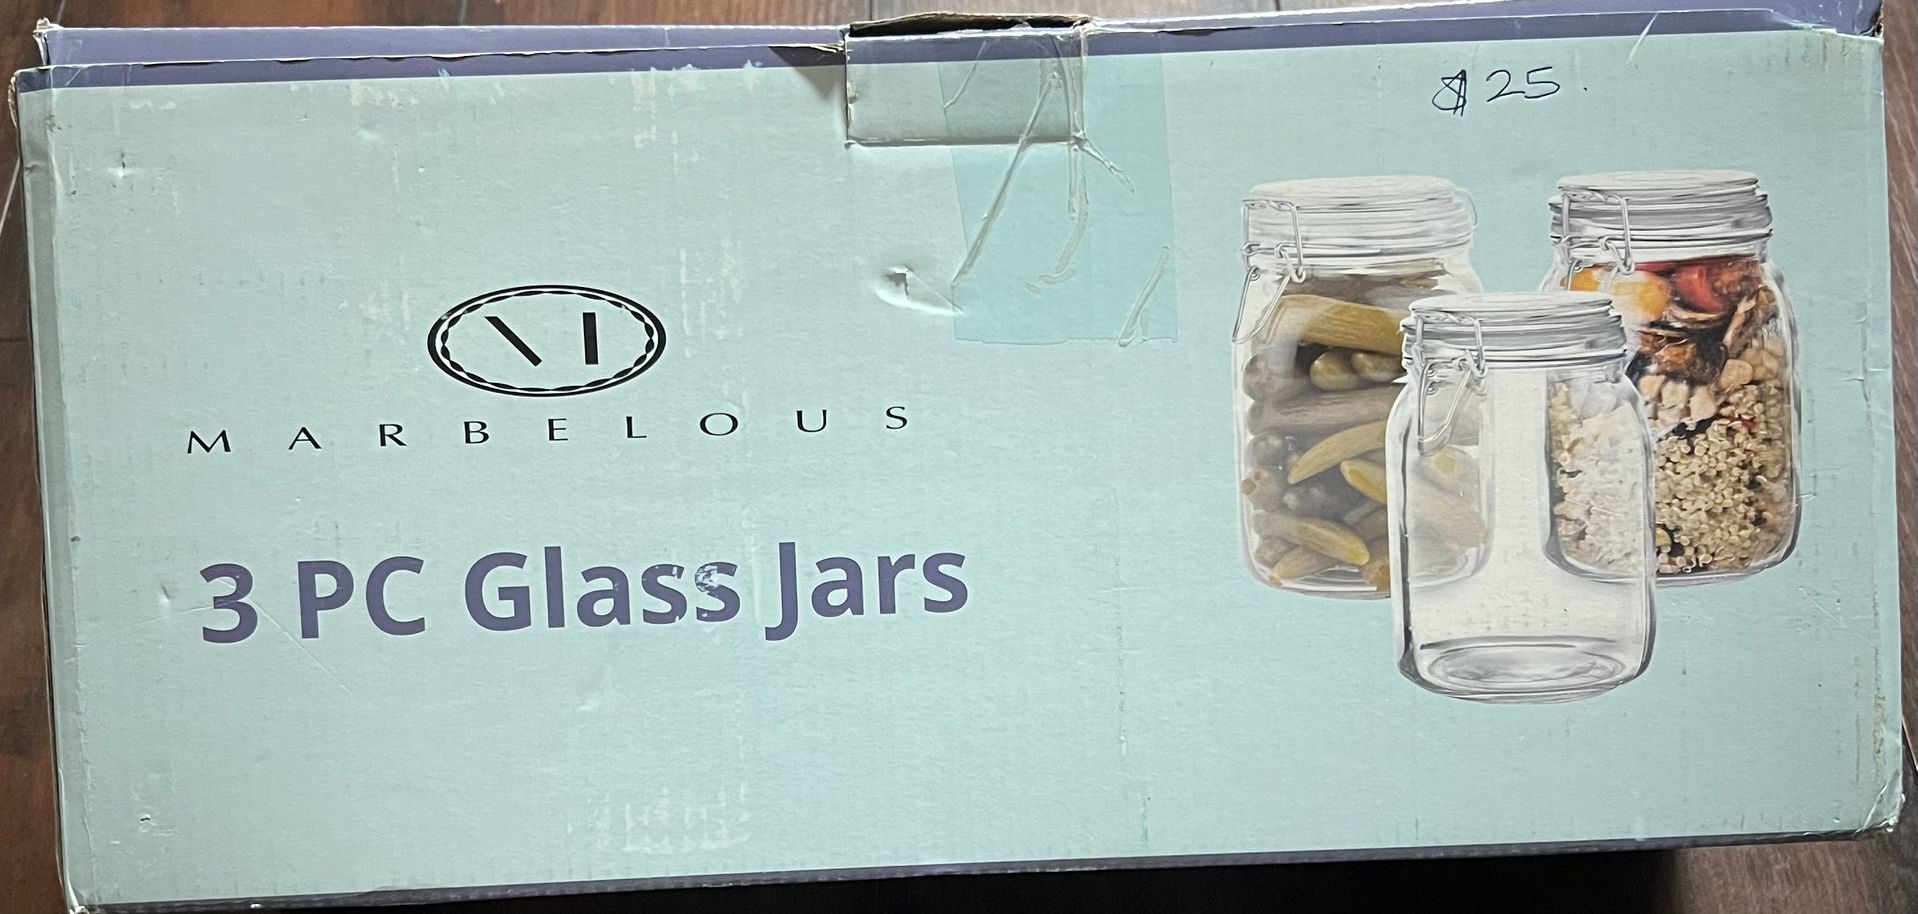 MARBELOUS 3 PC GLASS JARS